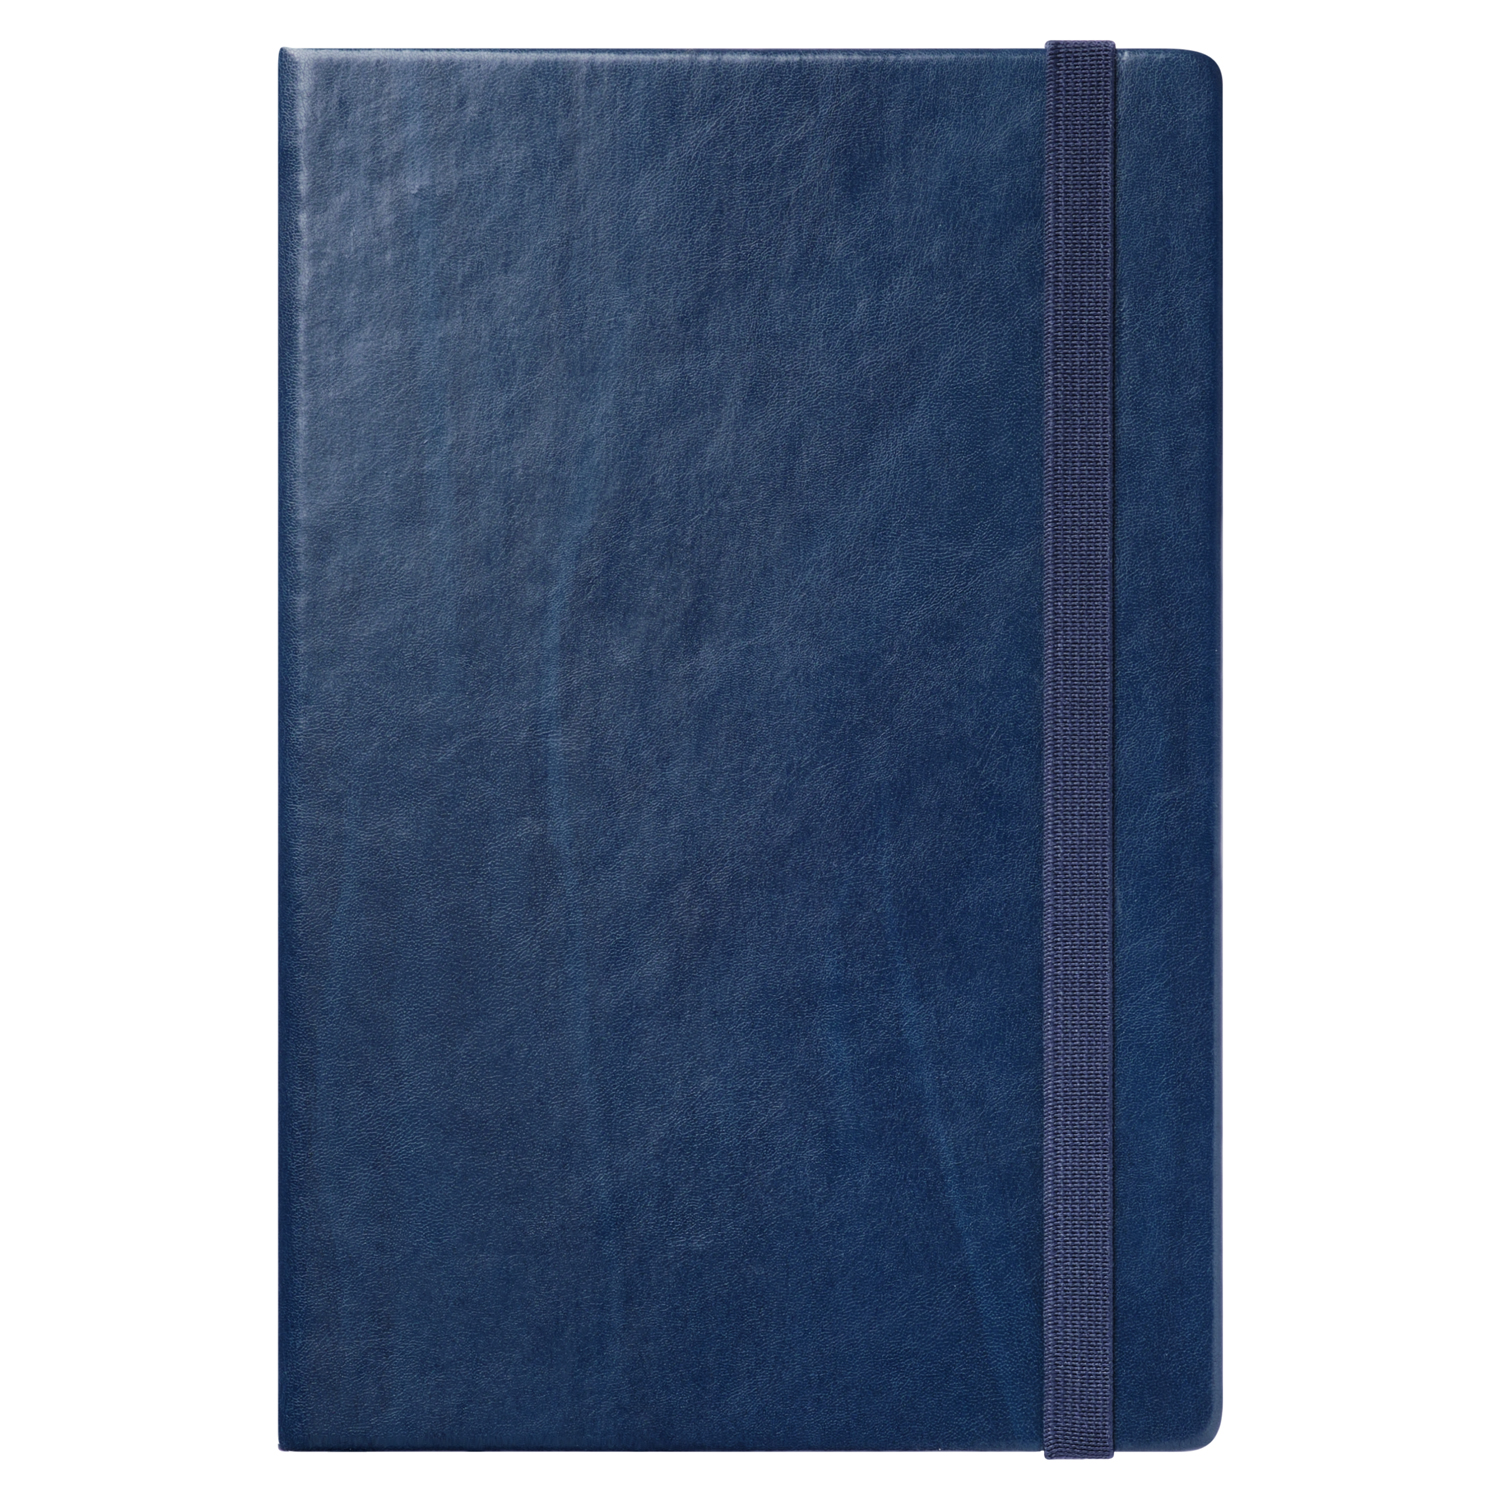 Ежедневник Reina BtoBook недатированный, синий (без упаковки, без стикера)